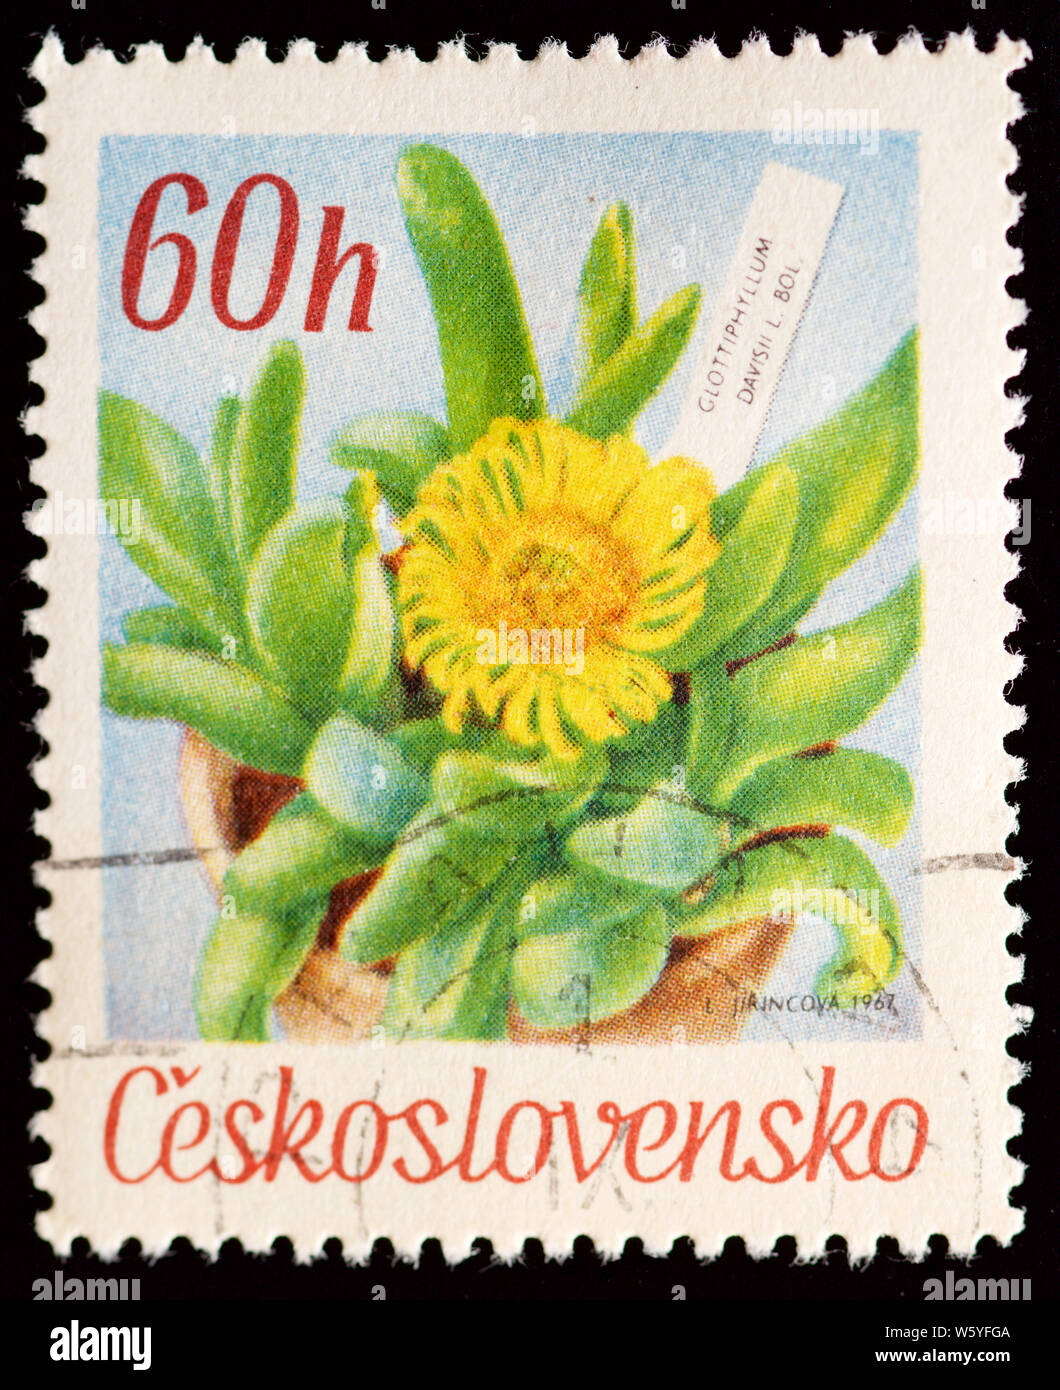 Czechoslovakia Postage Stamp - Flowers Stock Photo